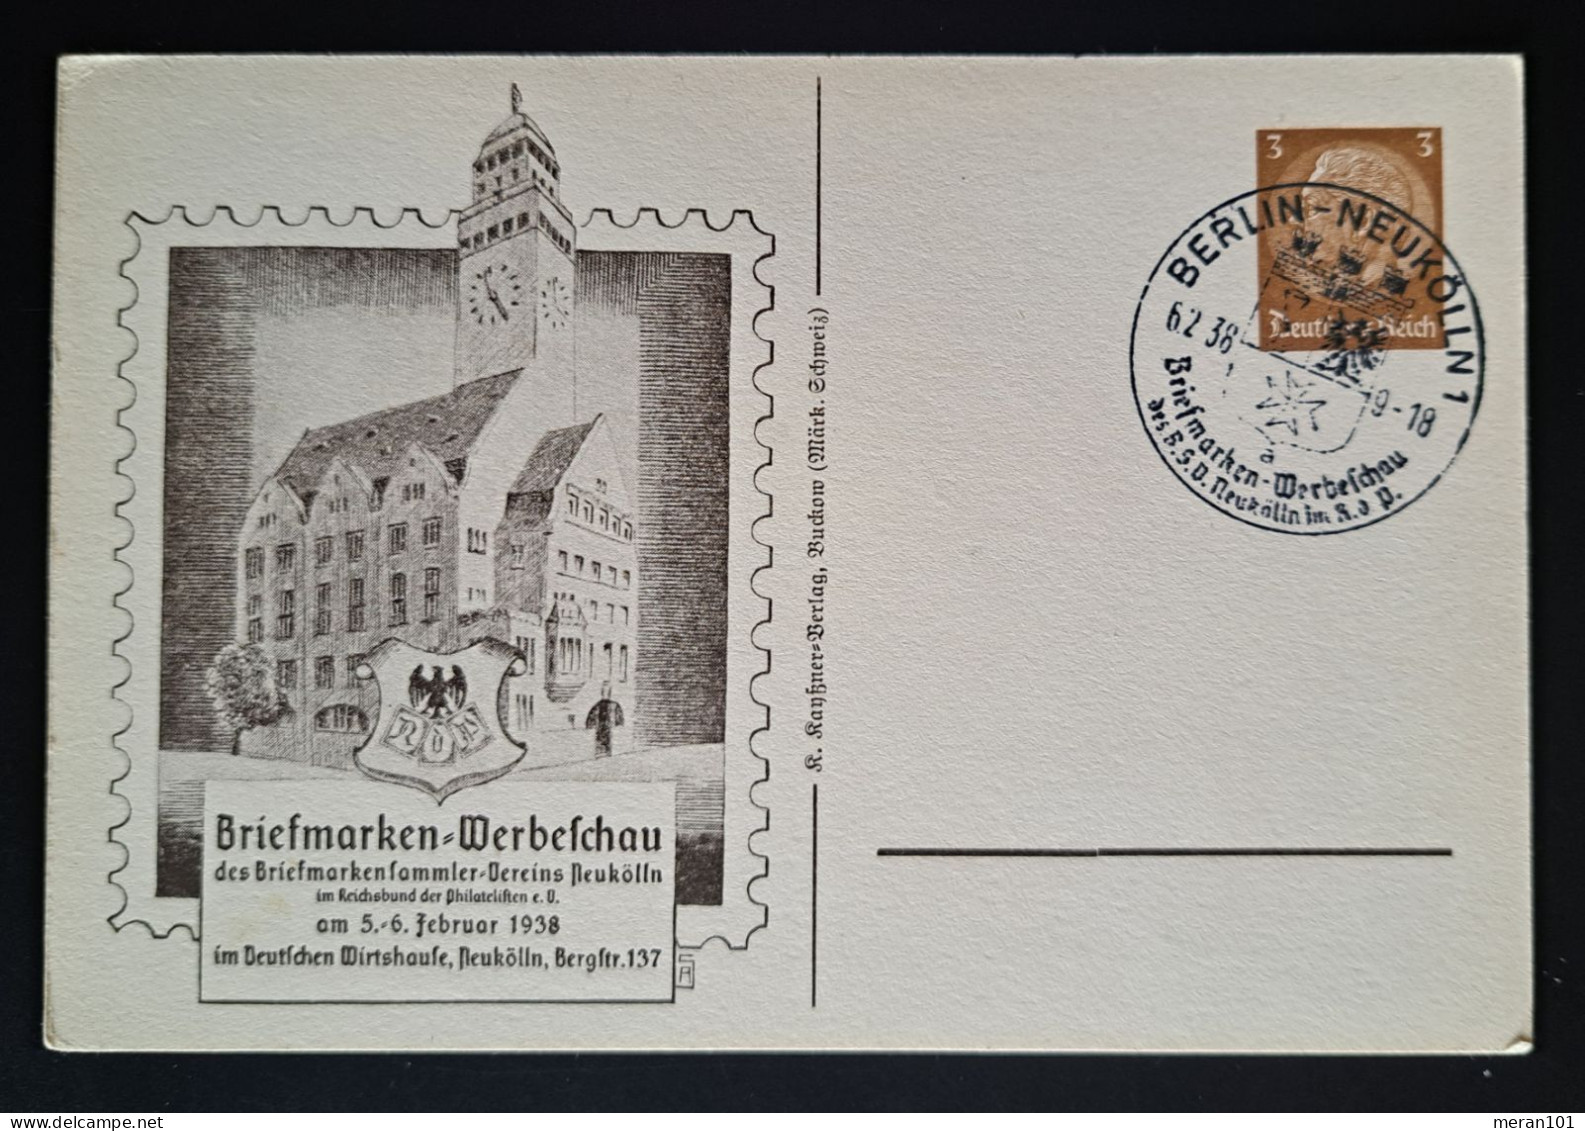 Privatpostkarte Briefmarken-Werbeschau BERLIN-NEUKÖLN Sonderstempel - Privat-Ganzsachen